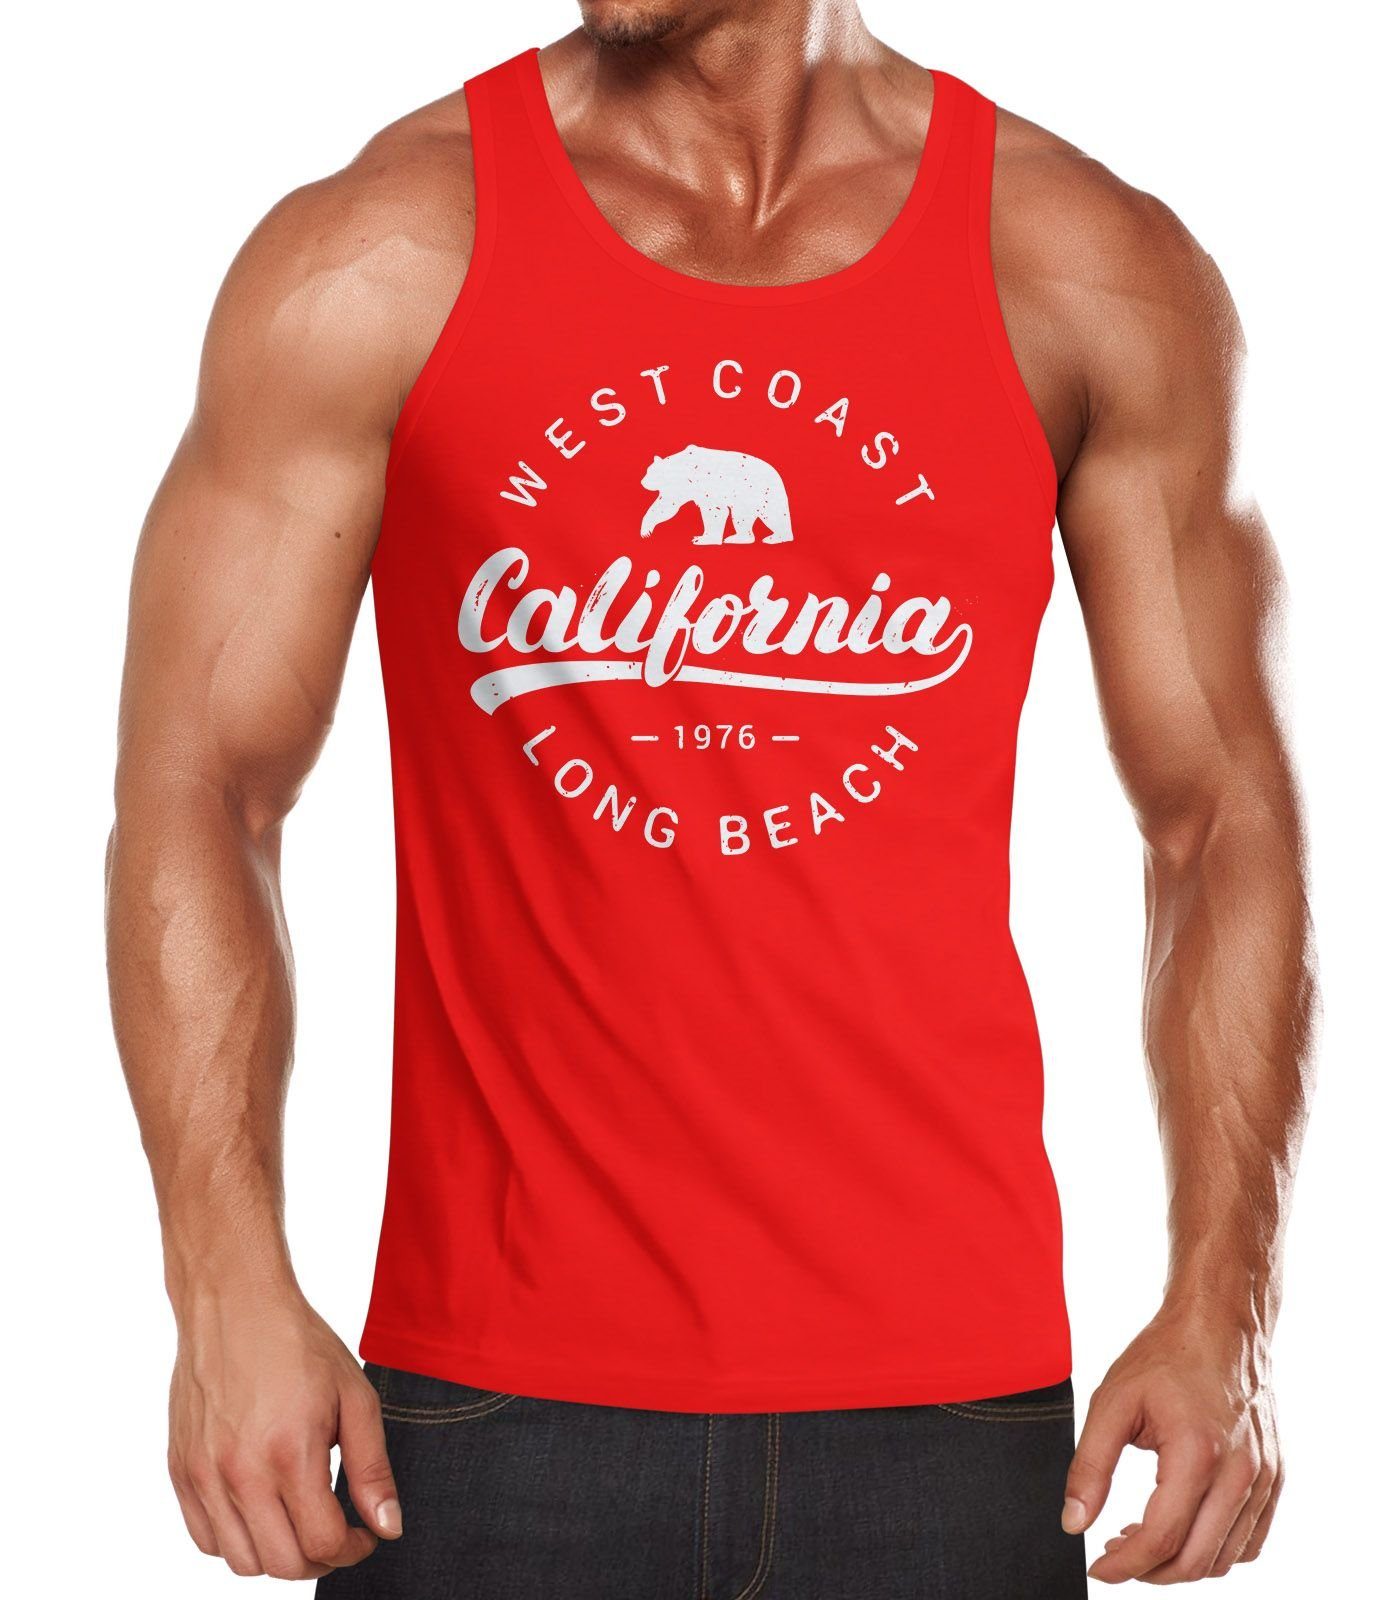 Neverless Tanktop »Herren Tank-Top California Republic Muskelshirt Muscle  Shirt Neverless®« mit Print online kaufen | OTTO